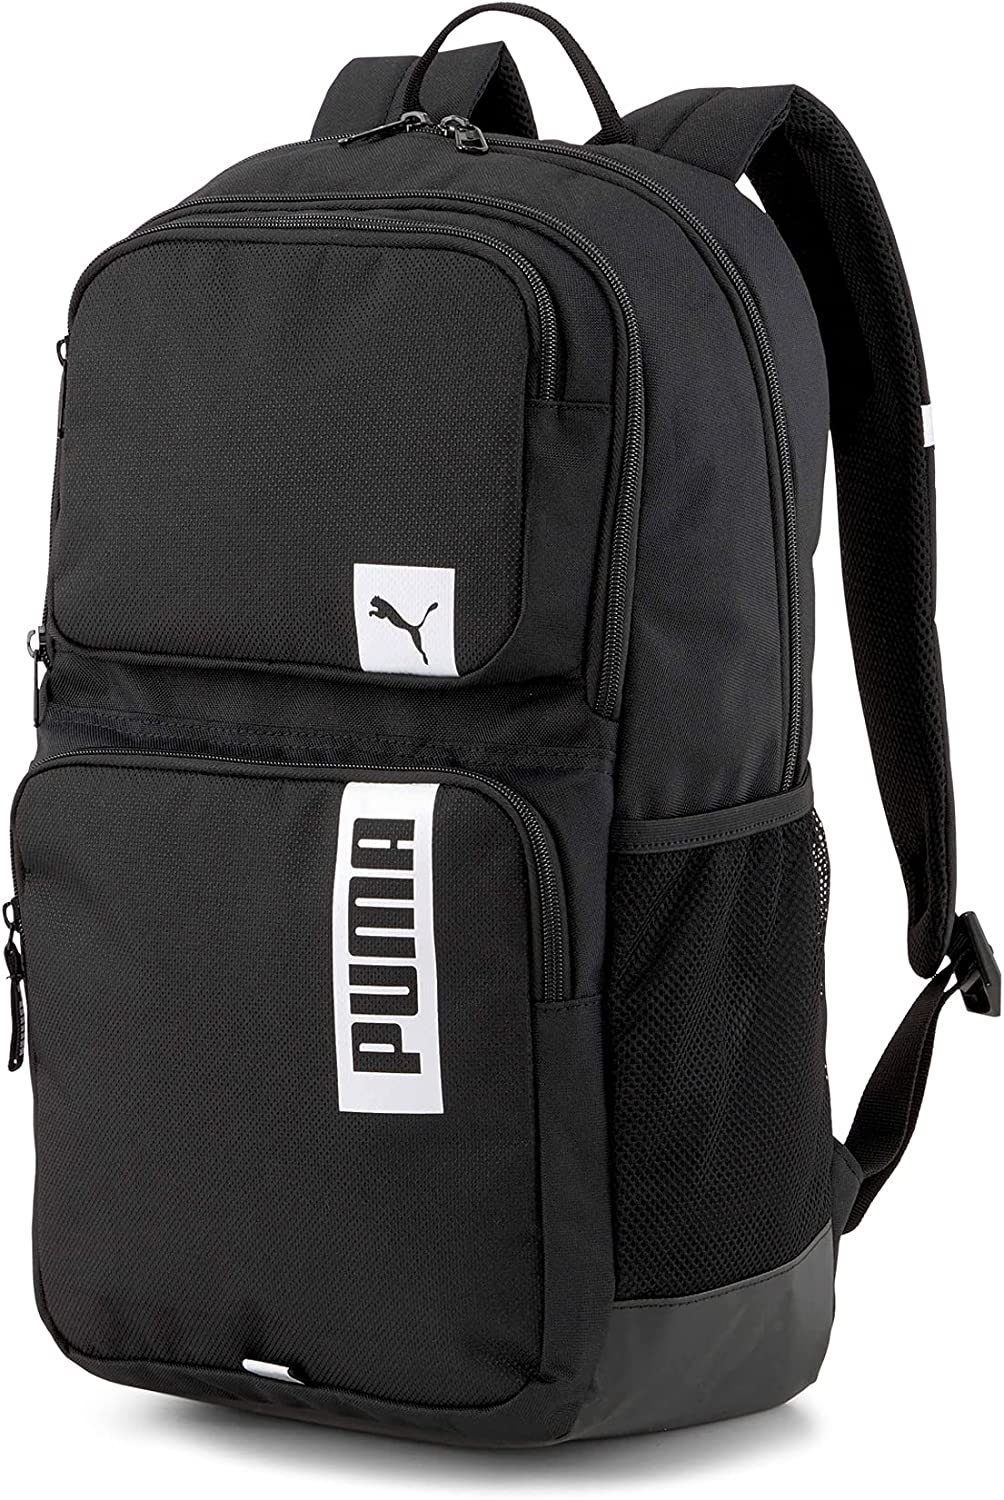 Puma Deck Backpack II Black, OSFA